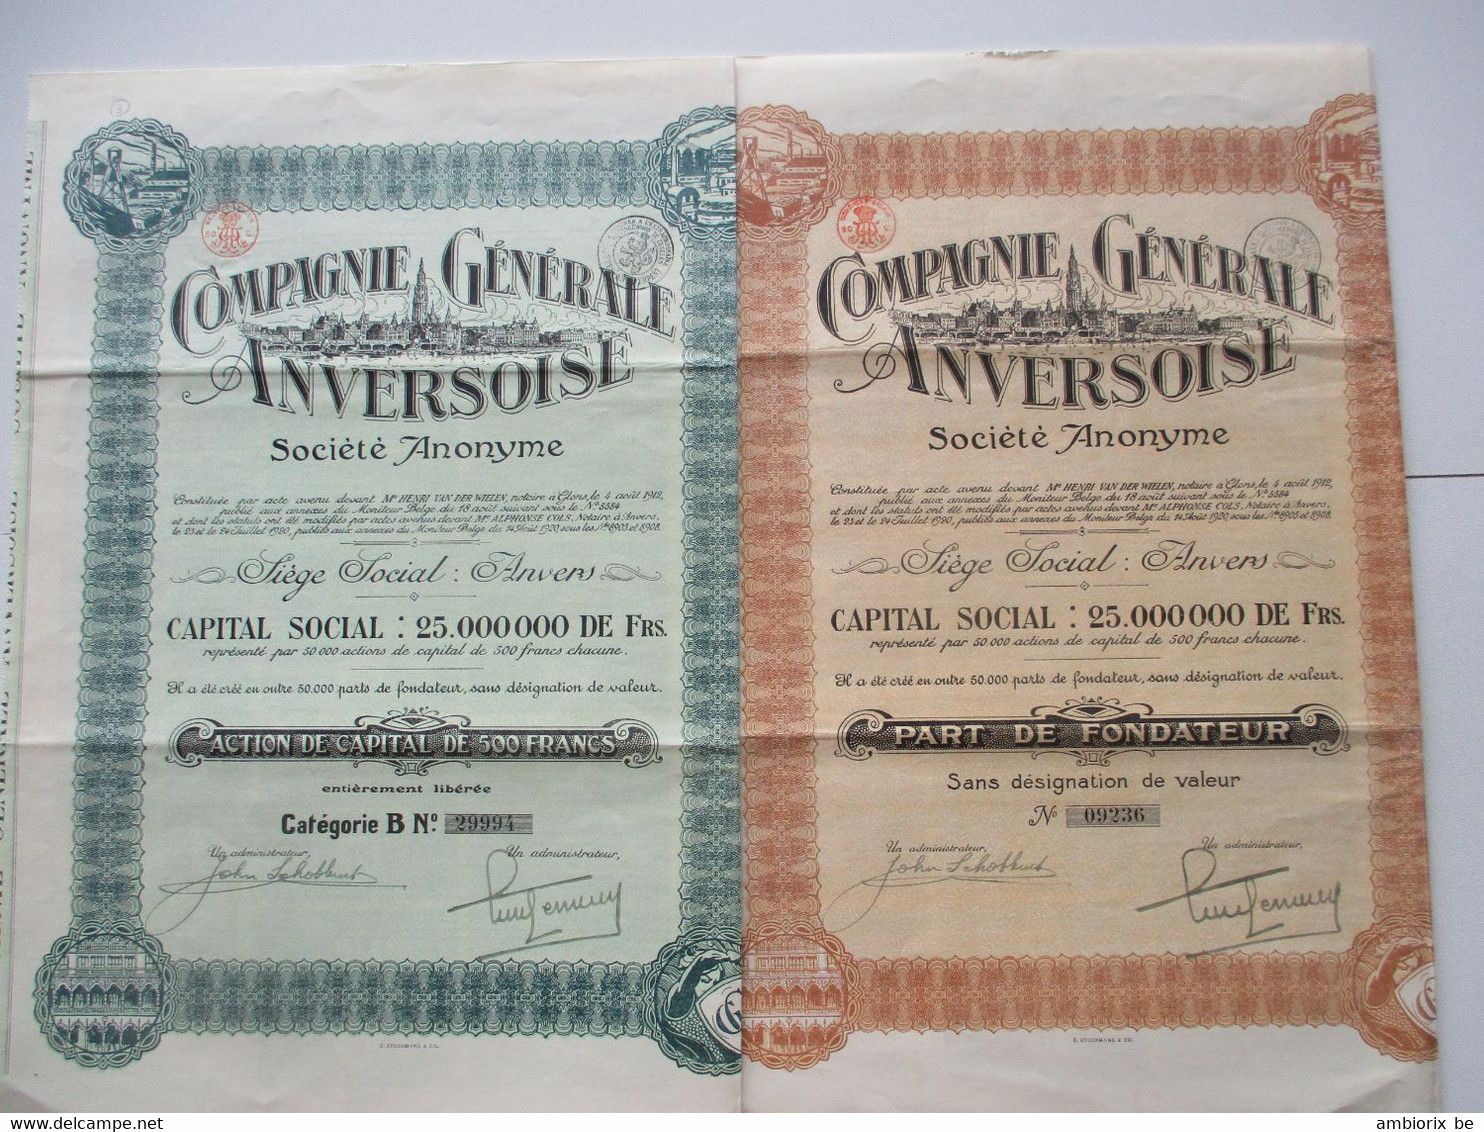 Compagnie Générale Anversoise 1920 - Capital 25 000 000 - Action De Capital De 500 Francs - Part De Fondateur - Navigation